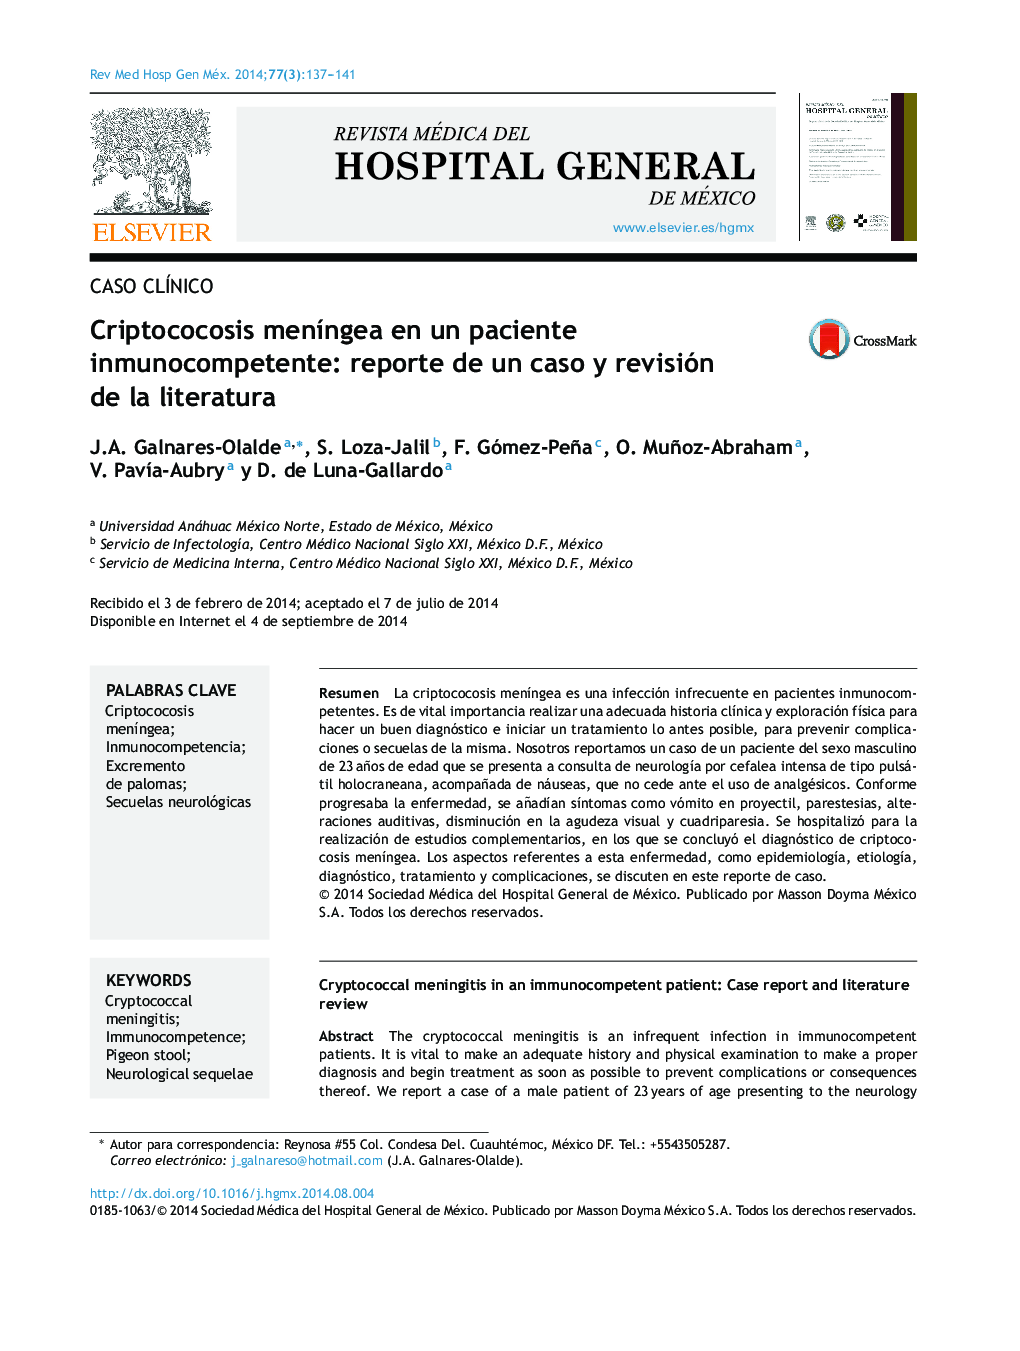 Criptococosis meníngea en un paciente inmunocompetente: reporte de un caso y revisión de la literatura